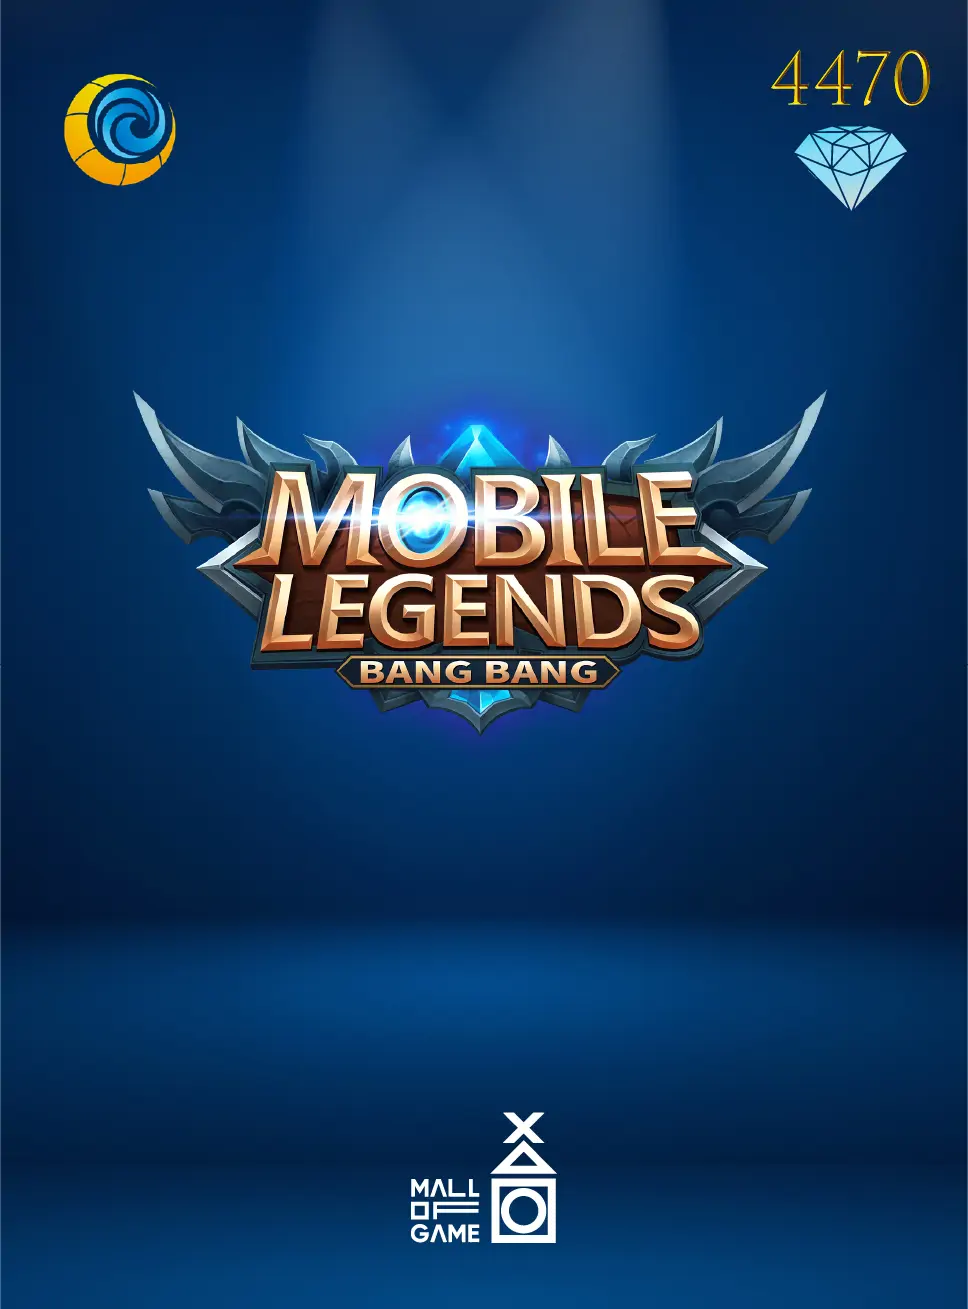 Mobile Legends 4770 Diamond